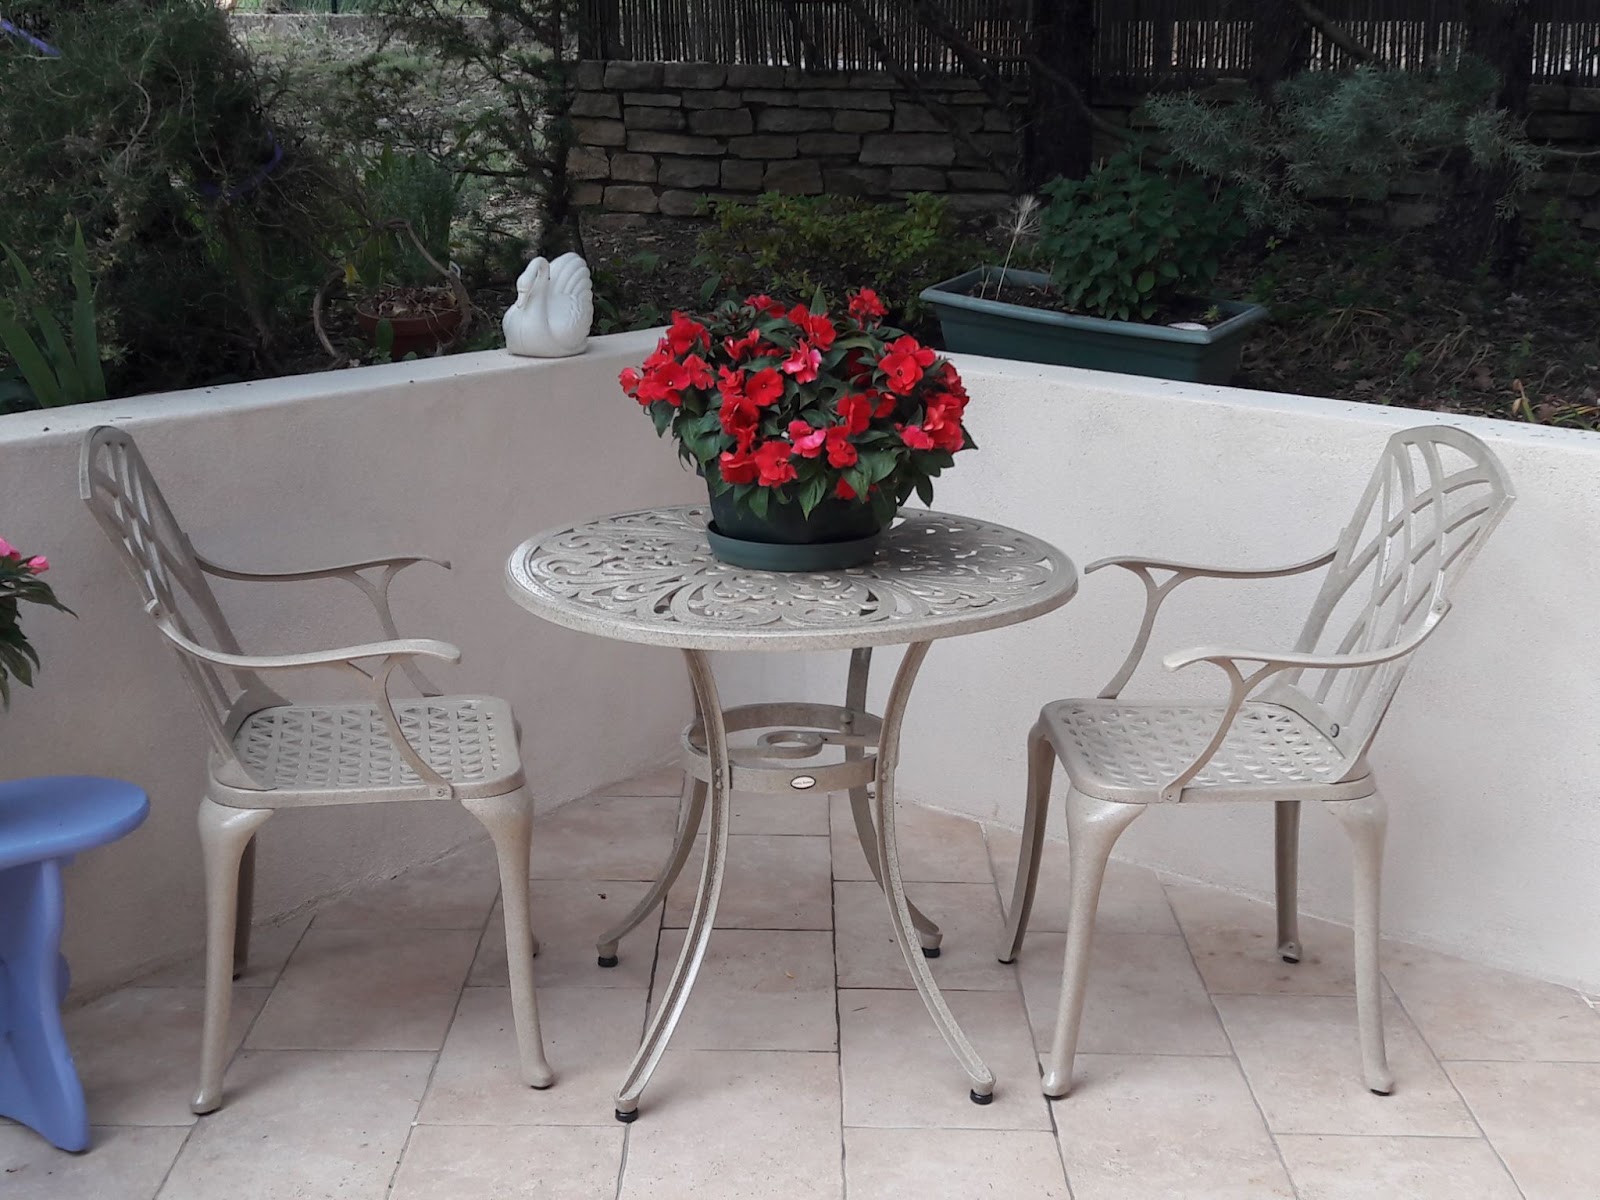 Runder Gartentisch für zwei mit Blumentopf als romantische Dekoration